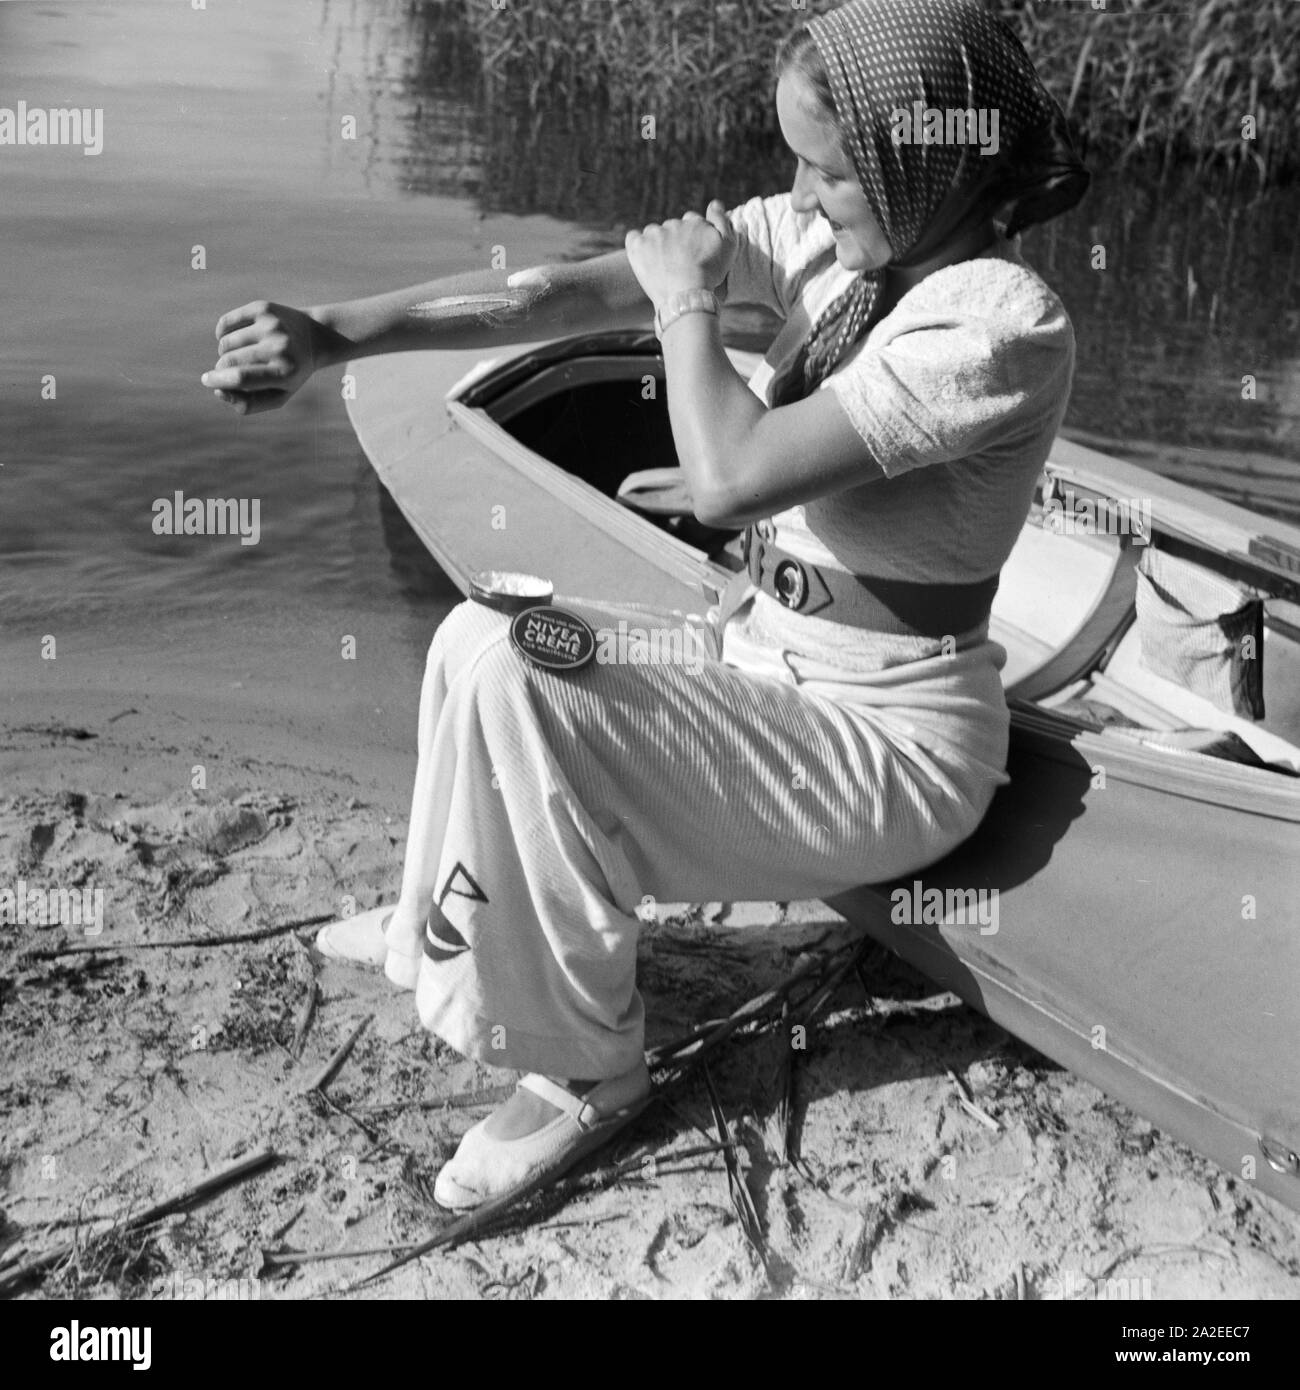 Einen guten Schutz gegen Sonnenbrand bietet Nivea Creme, eine junge Frau am  Ufer eines Sees mit einem Klepper Faltboot Typ T6, Deutschland 1930er  Jahre. A Nivea cream protects of sunburn, young woman